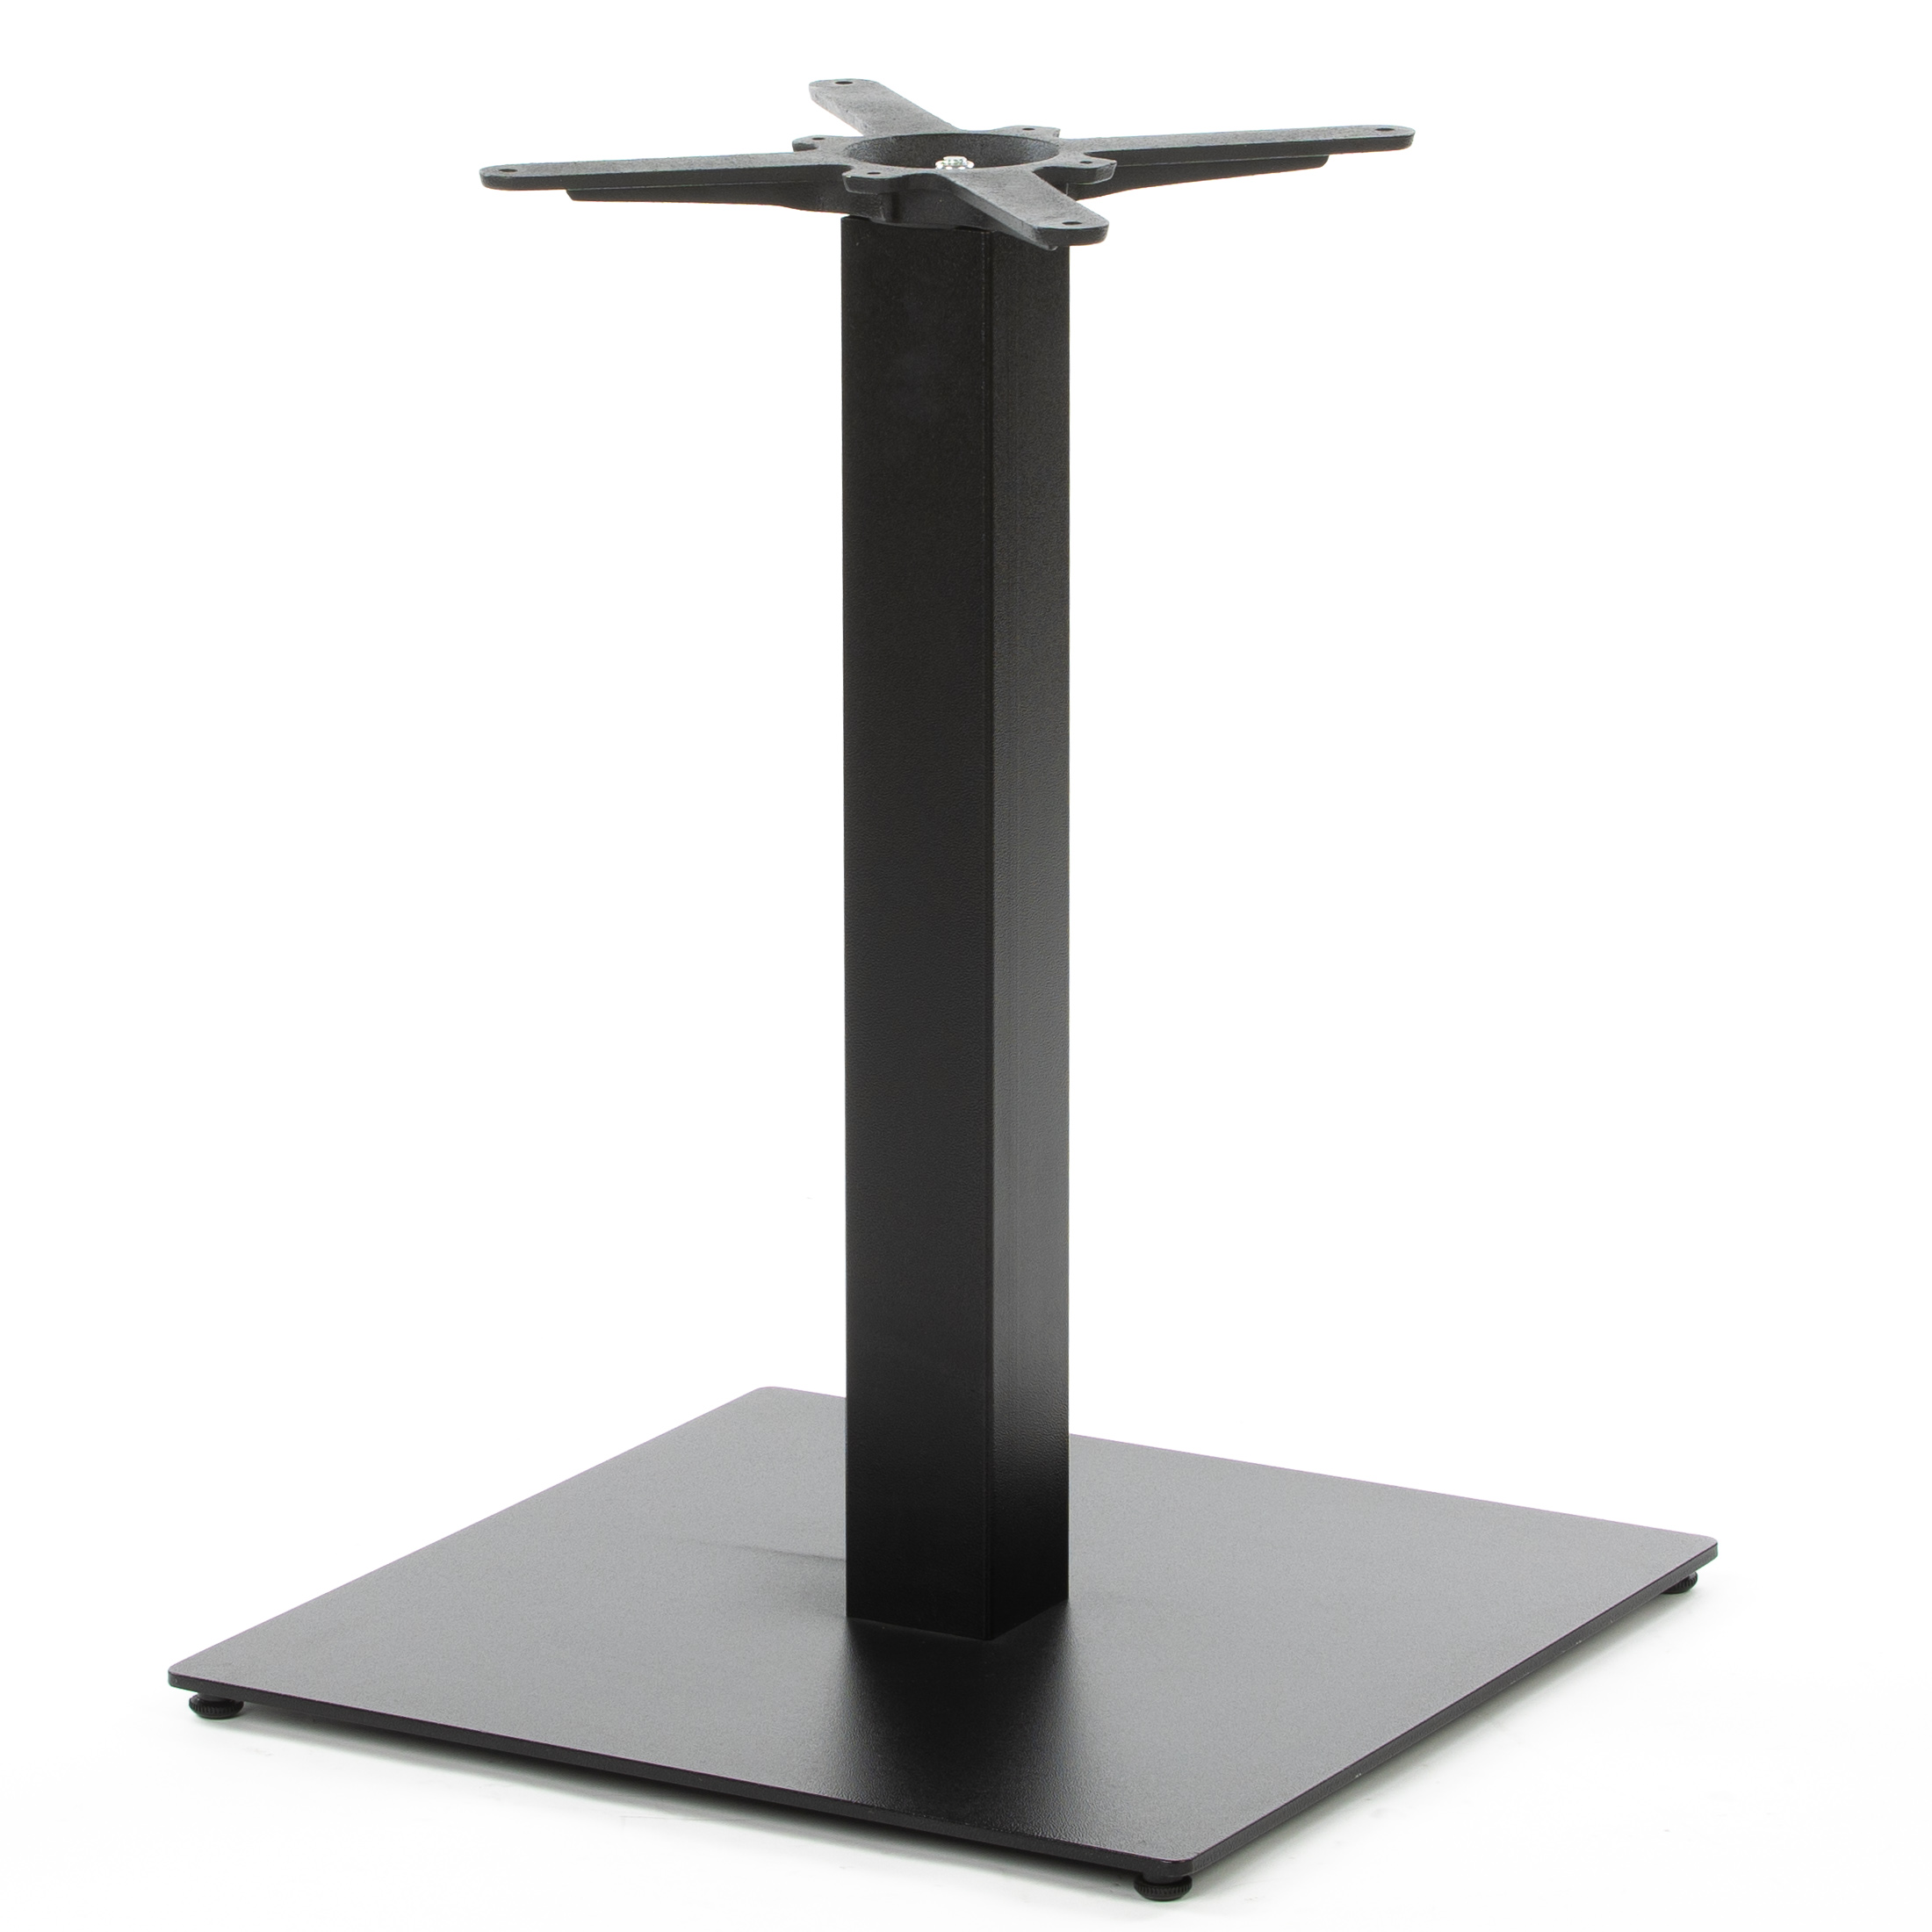 Tischgestell PJ7094 - schwarz - quadratische Bodenplatte - standfest